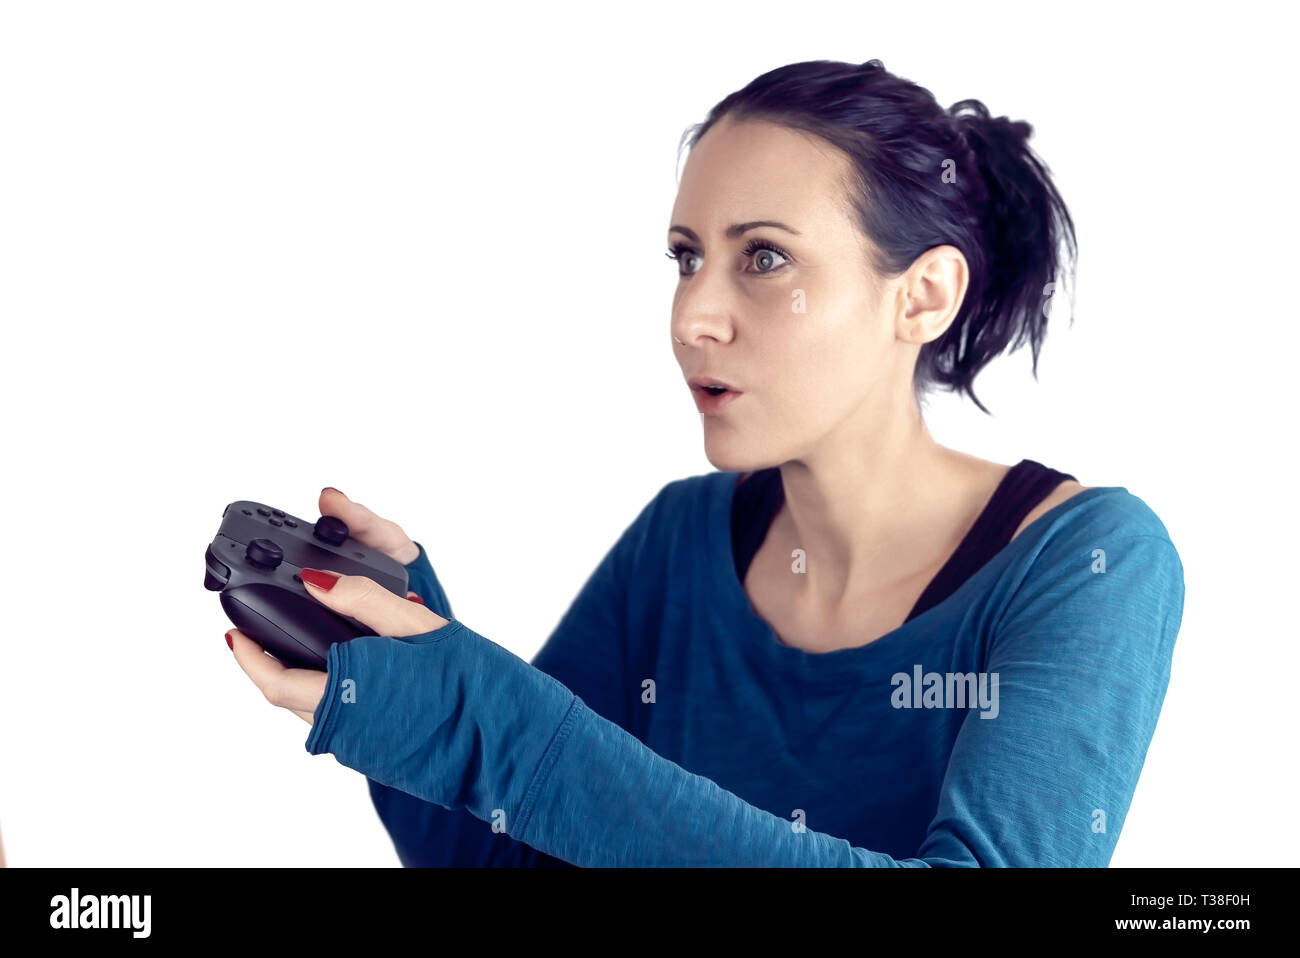 Mujer joven con jersey azul jugar video juegos en el controlador para juegos inalámbrico con un concentrado de expresiones faciales aislado en blanco Foto de stock